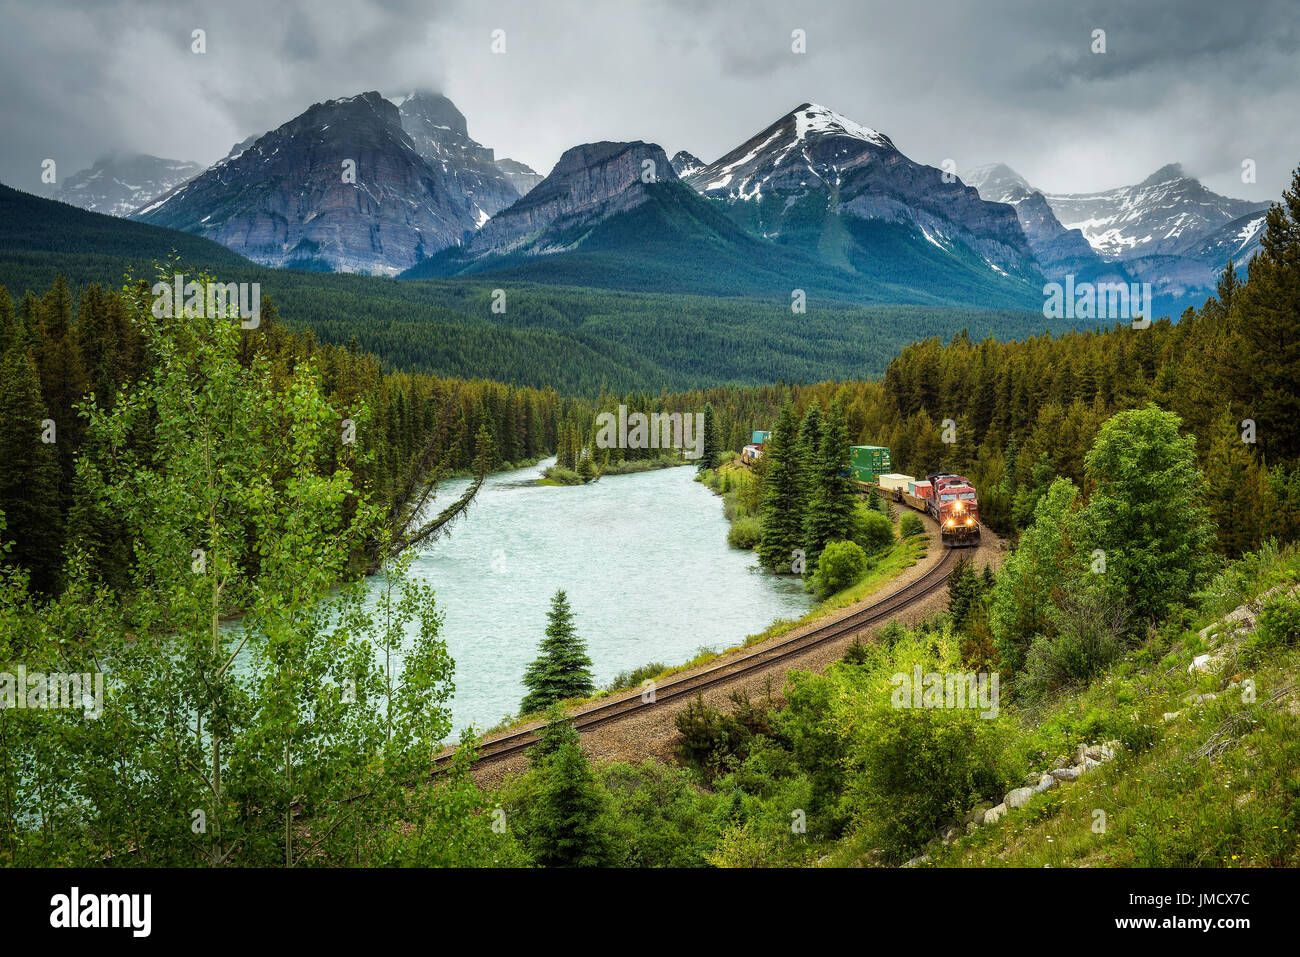 Zug auf der Durchreise die Morant Kurve im Bow Valley mit Rocky Mountains im Hintergrund, Banff Nationalpark, Alberta Kanada Stockfoto